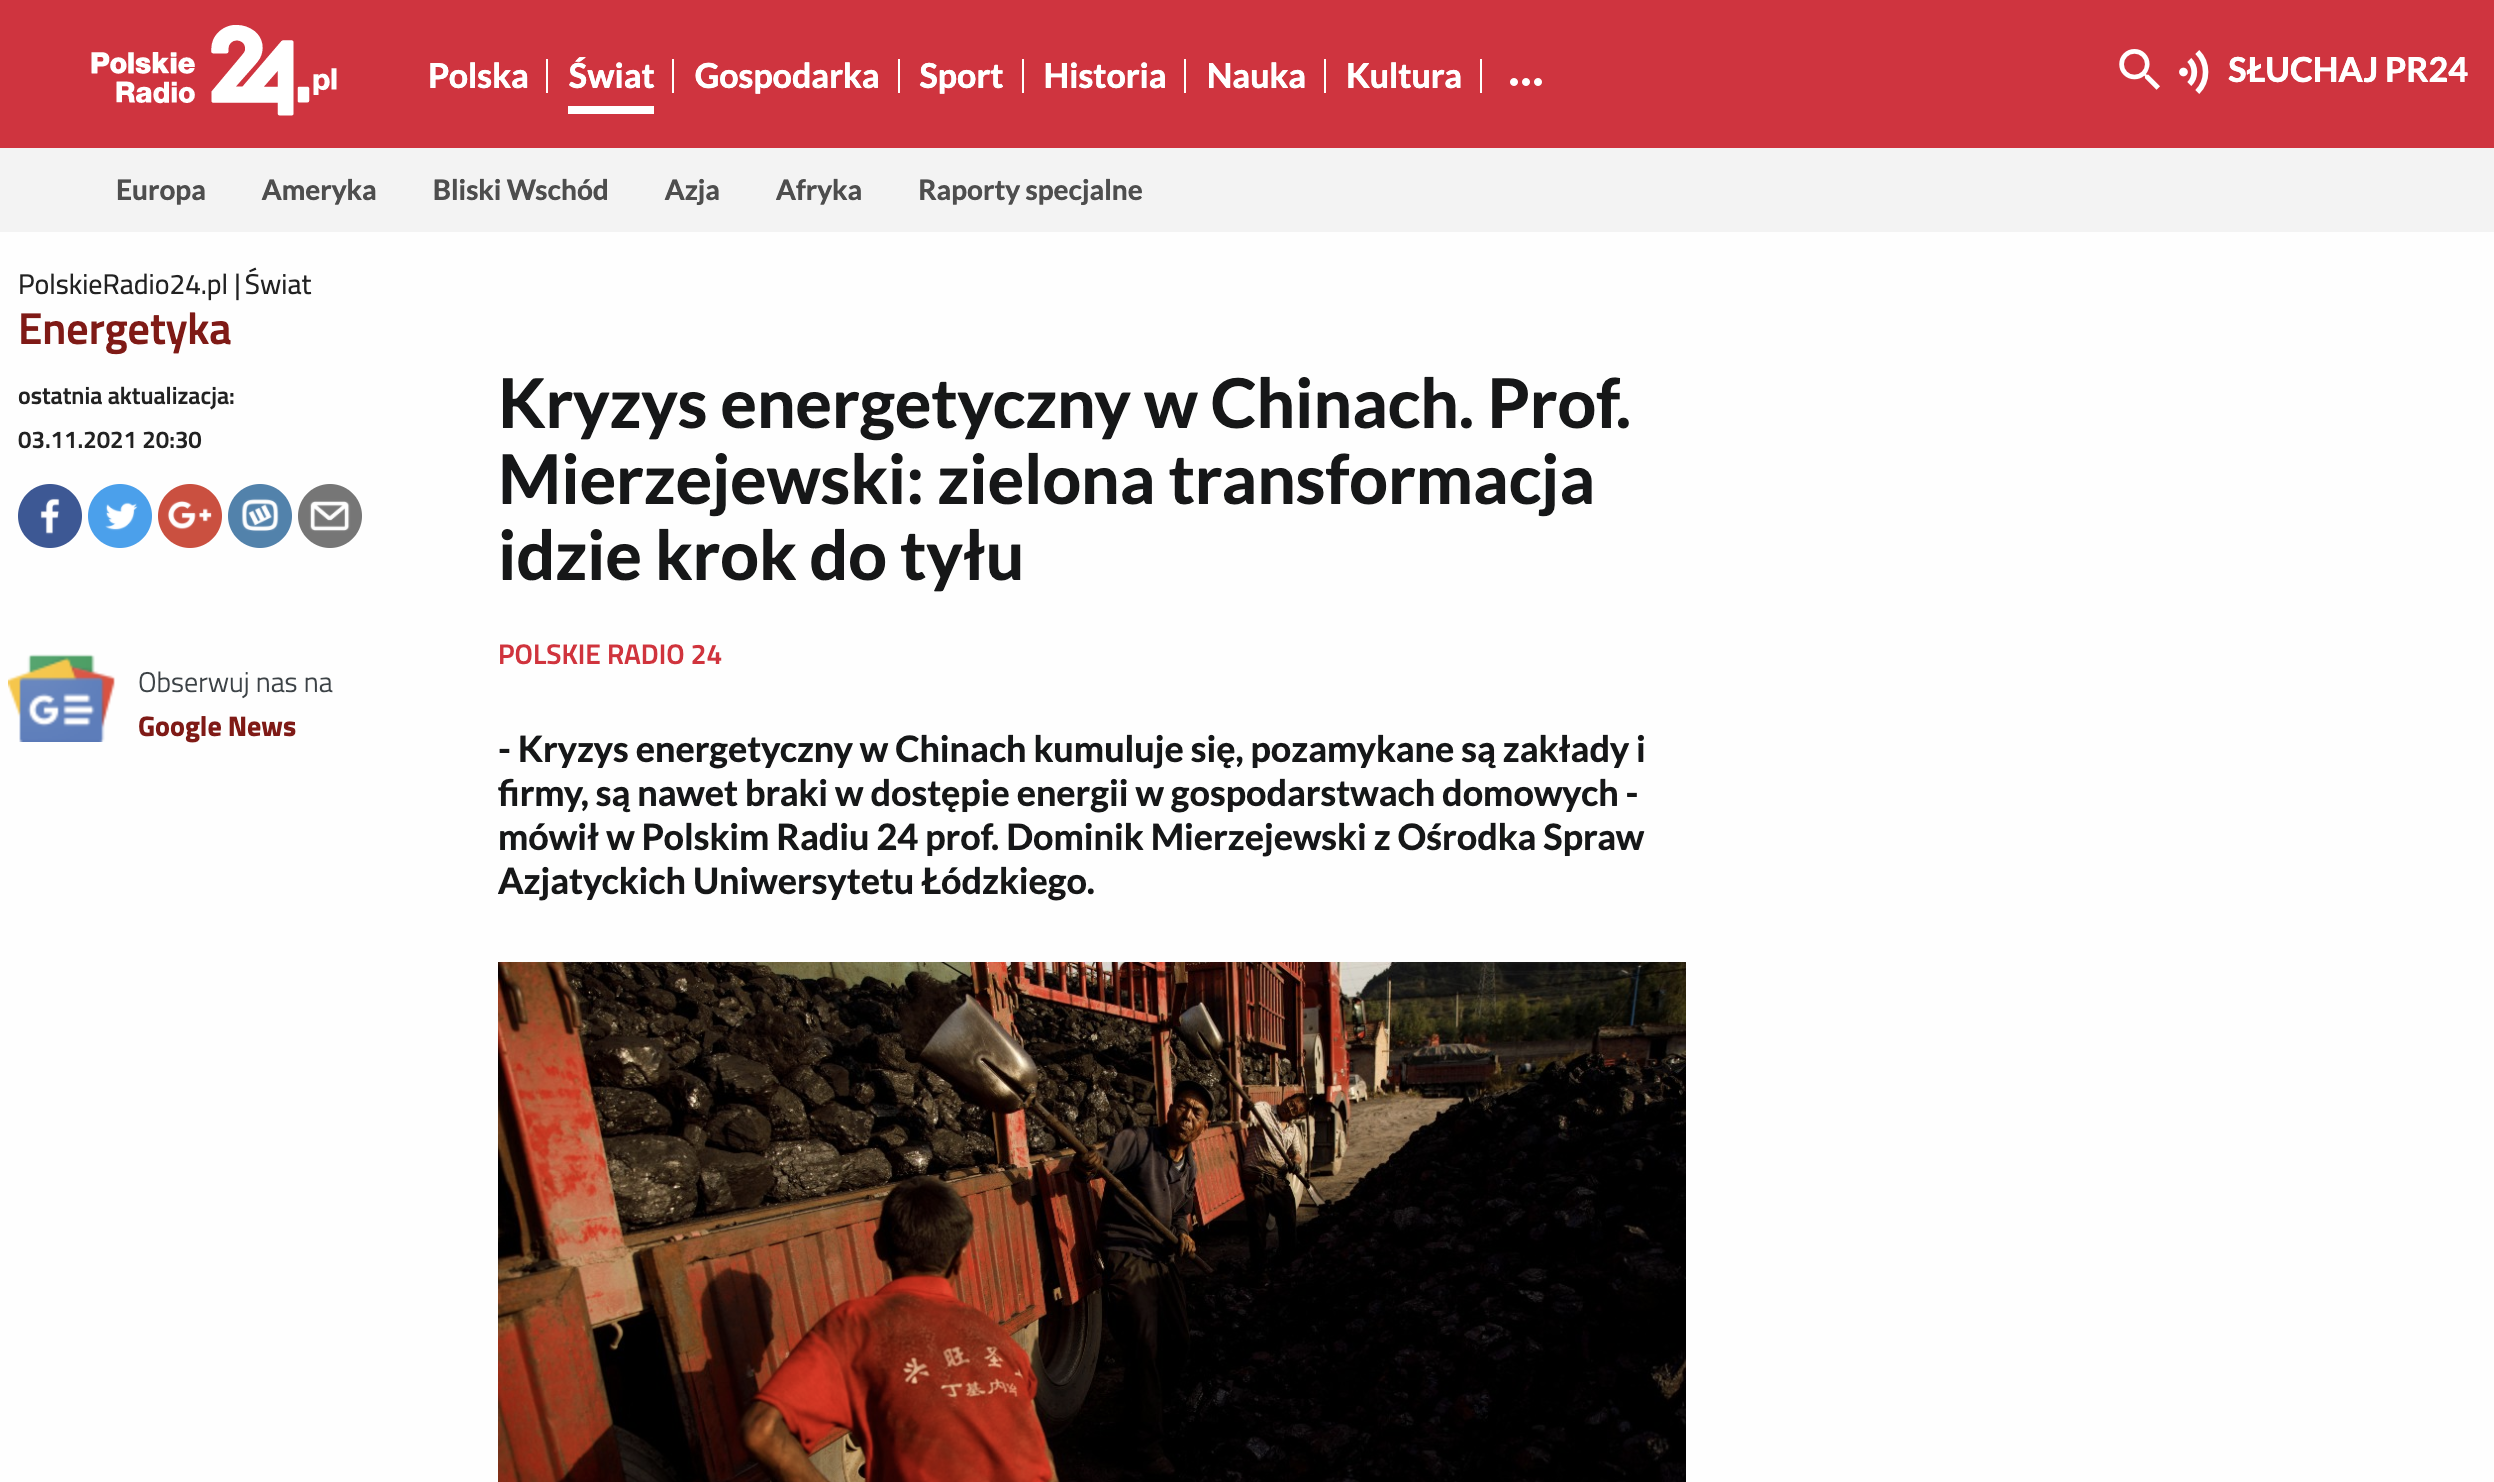 Zrzut ekranu strony internetowej Polskiego Radia/Screenshot of the Polskie Radio website